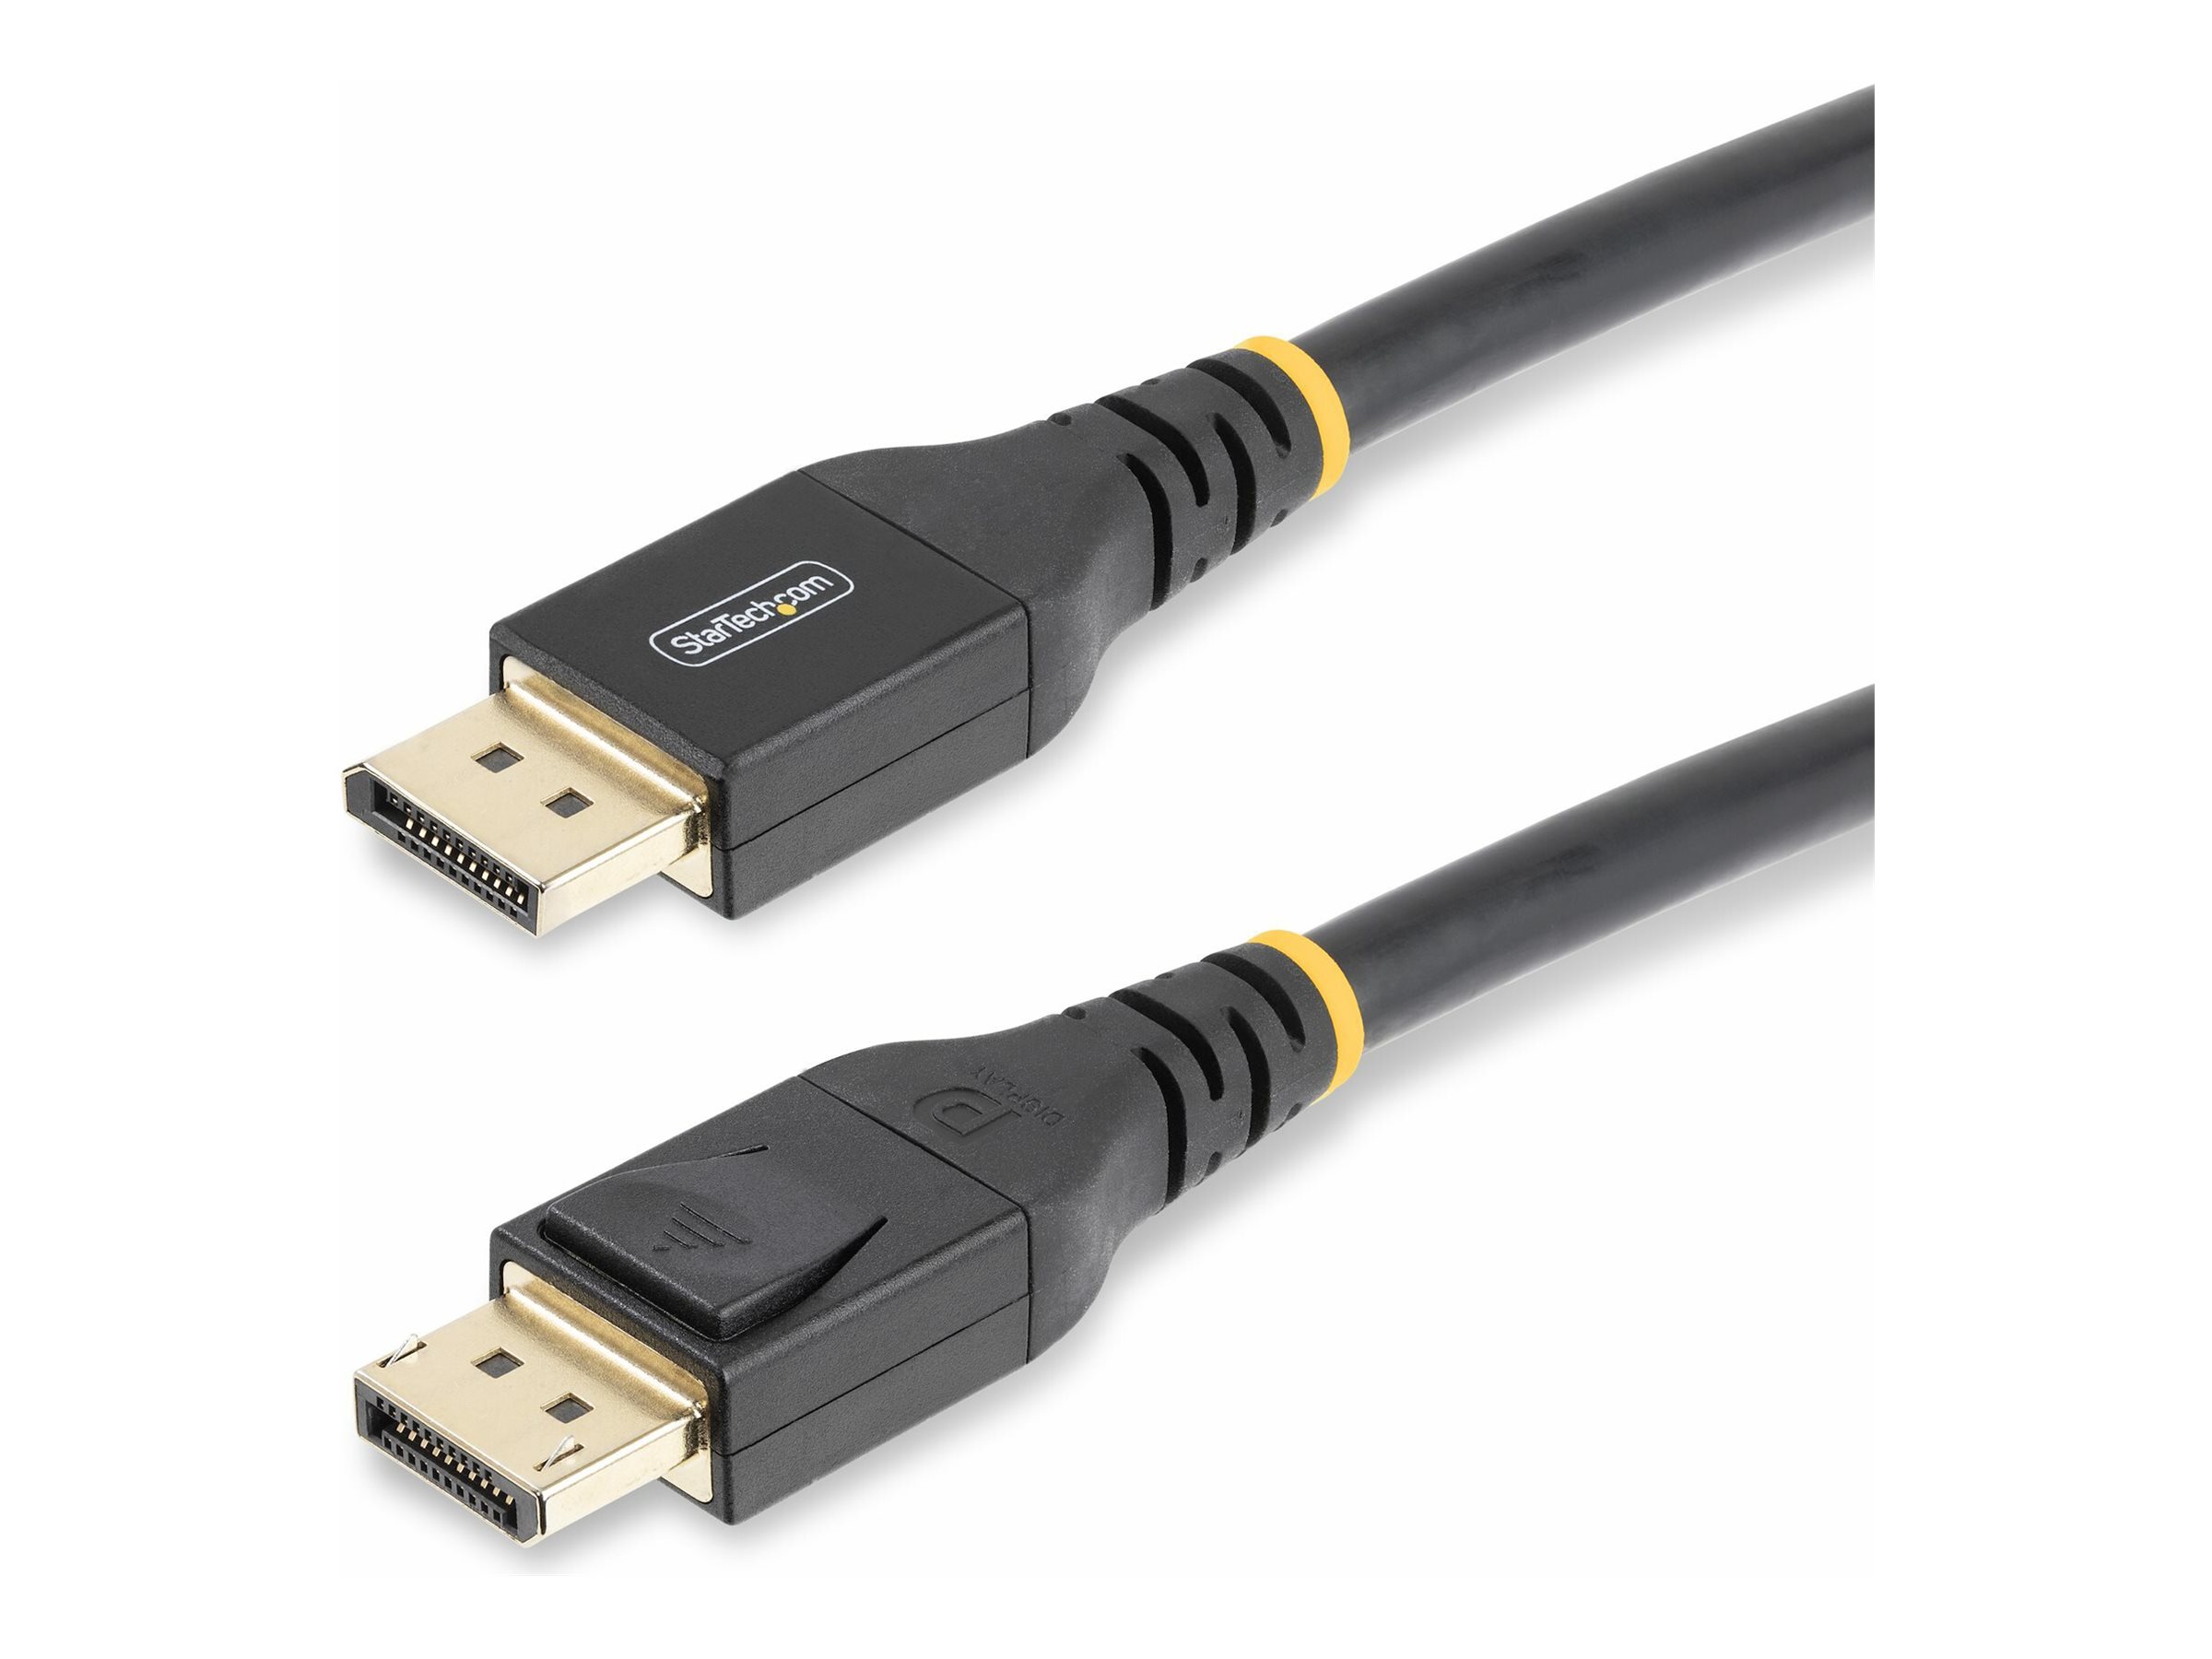 DisplayPort to DisplayPort 1.4 Cable –